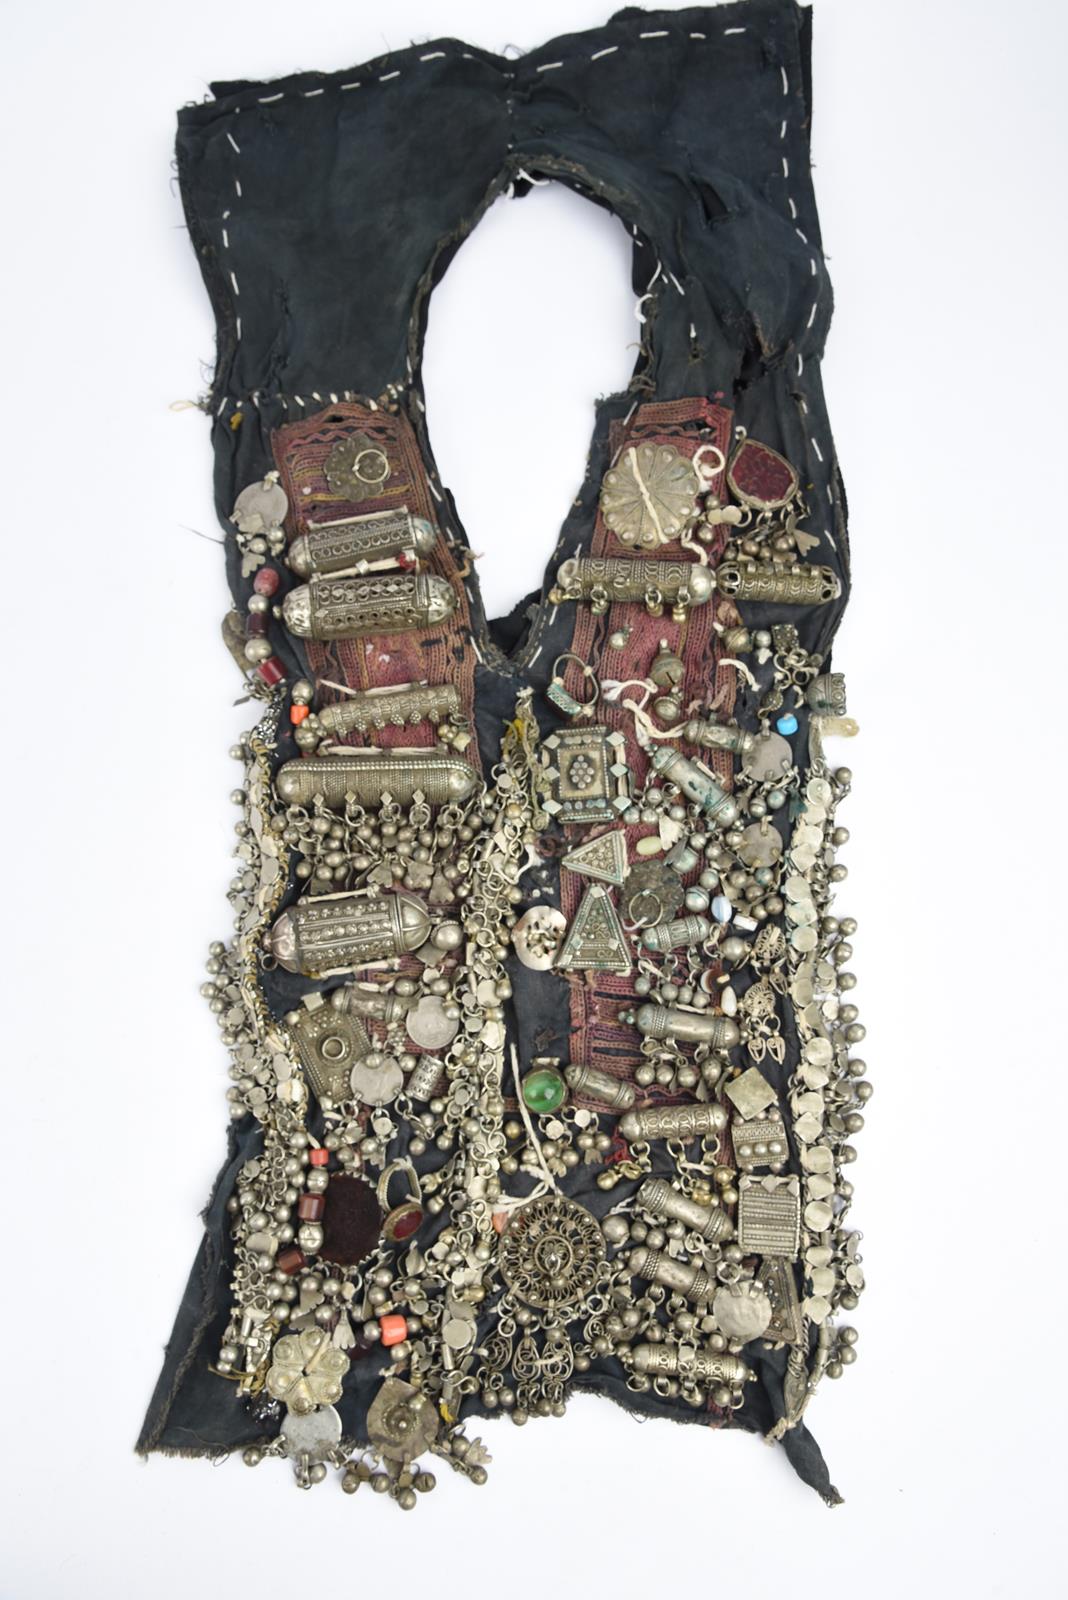 λA Bedouin amulet chest ornament cloth with numerous sewn on amulets and beads, 62cm long, and three - Image 22 of 27